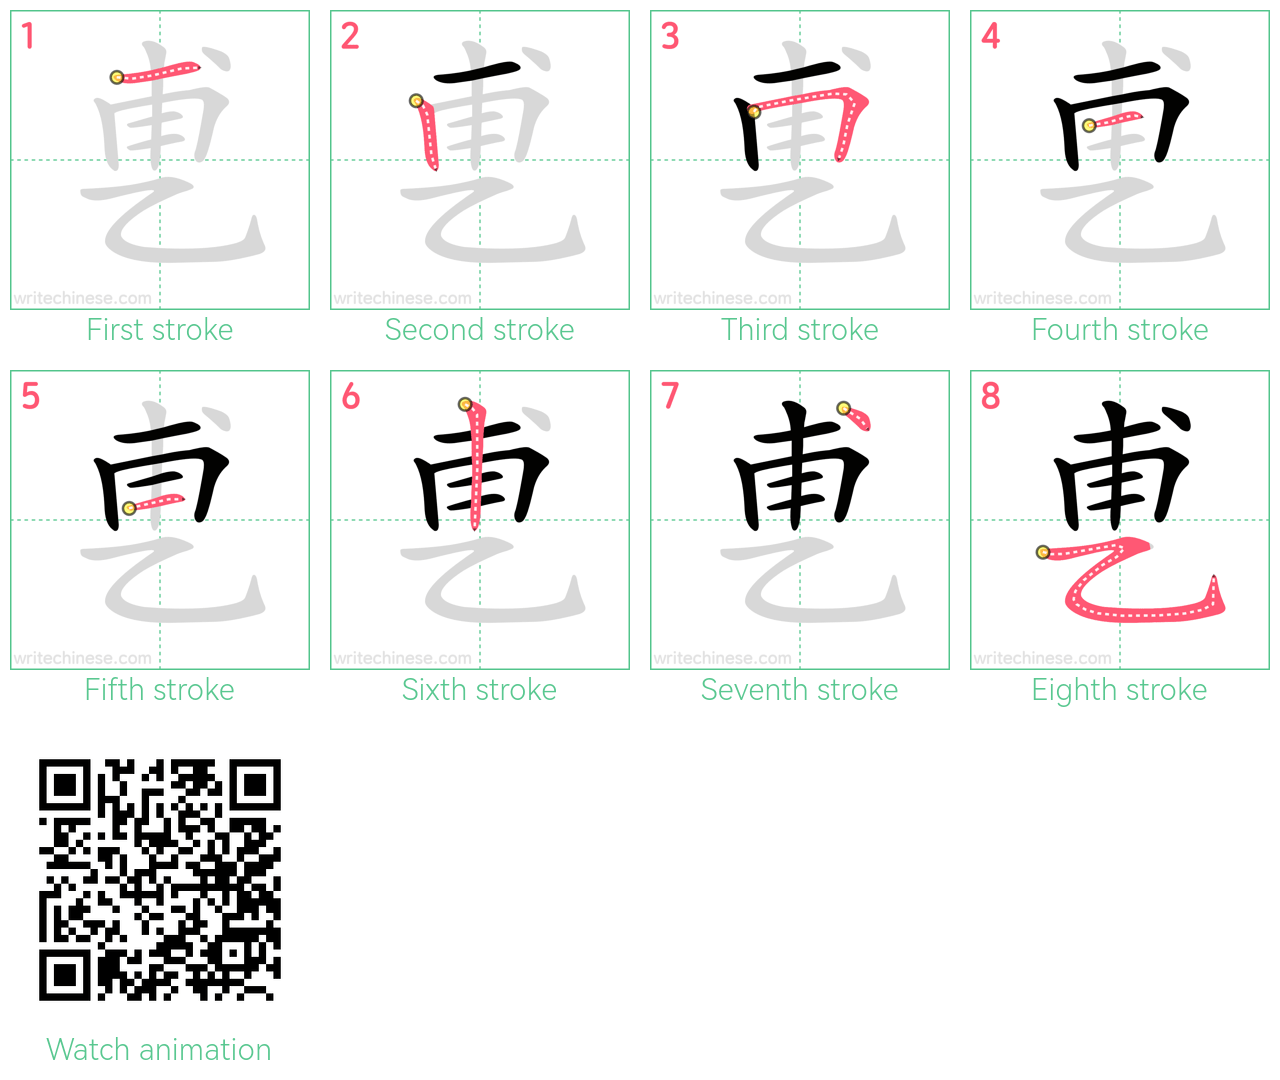 乶 step-by-step stroke order diagrams